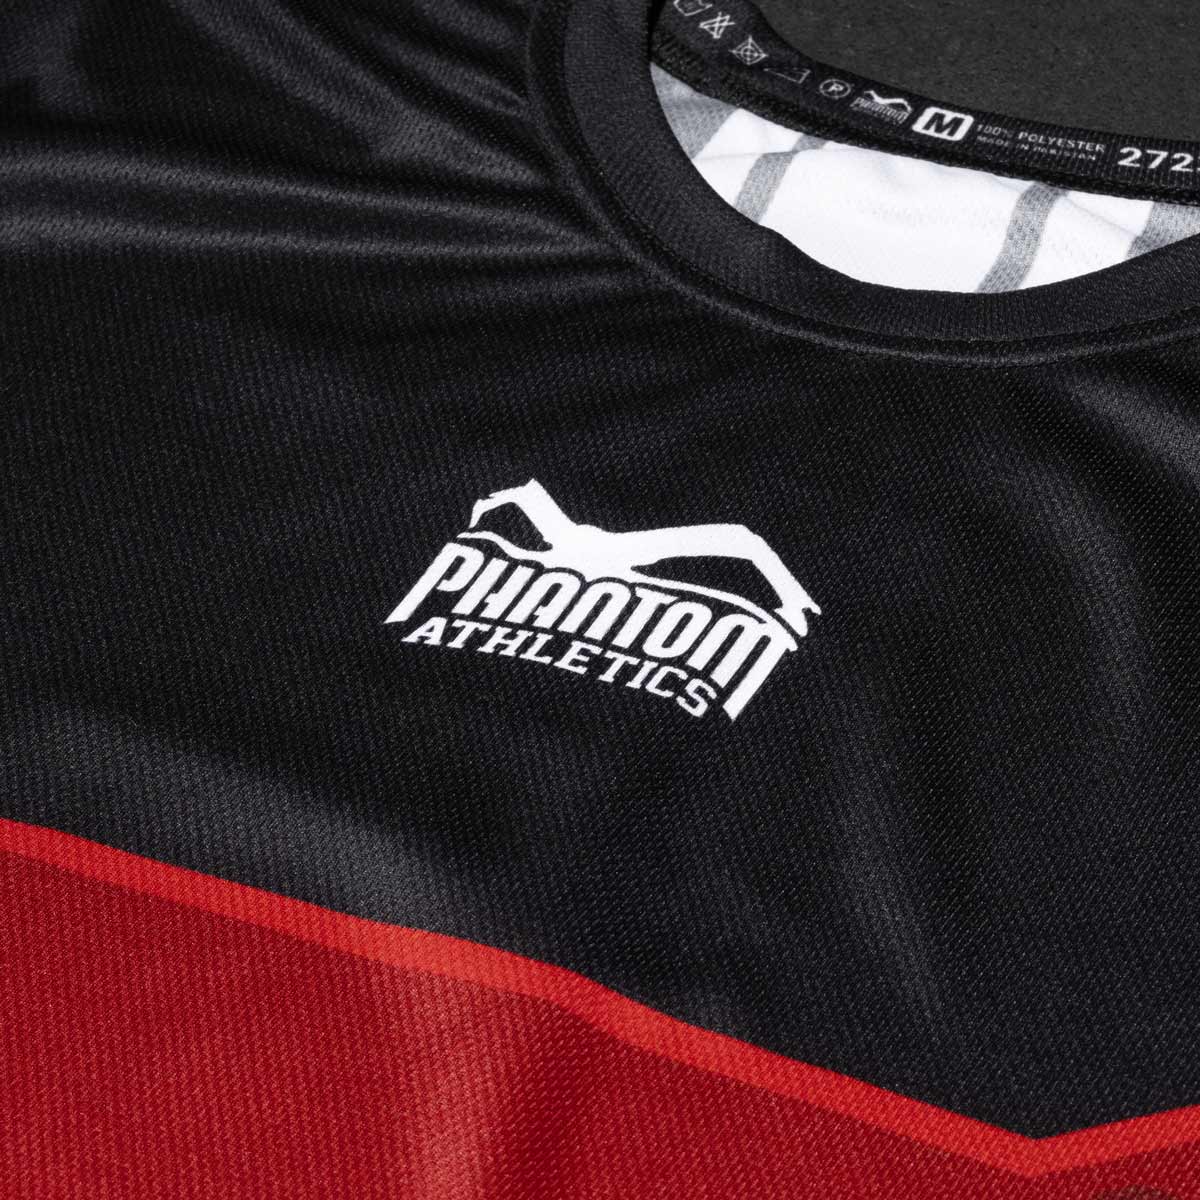 Das neue Phantom EVO Kampfsportshirt für dein Training. Ultra bequem zu tragen und schweißabweisend. Jetzt in der limitierten RED Edition.